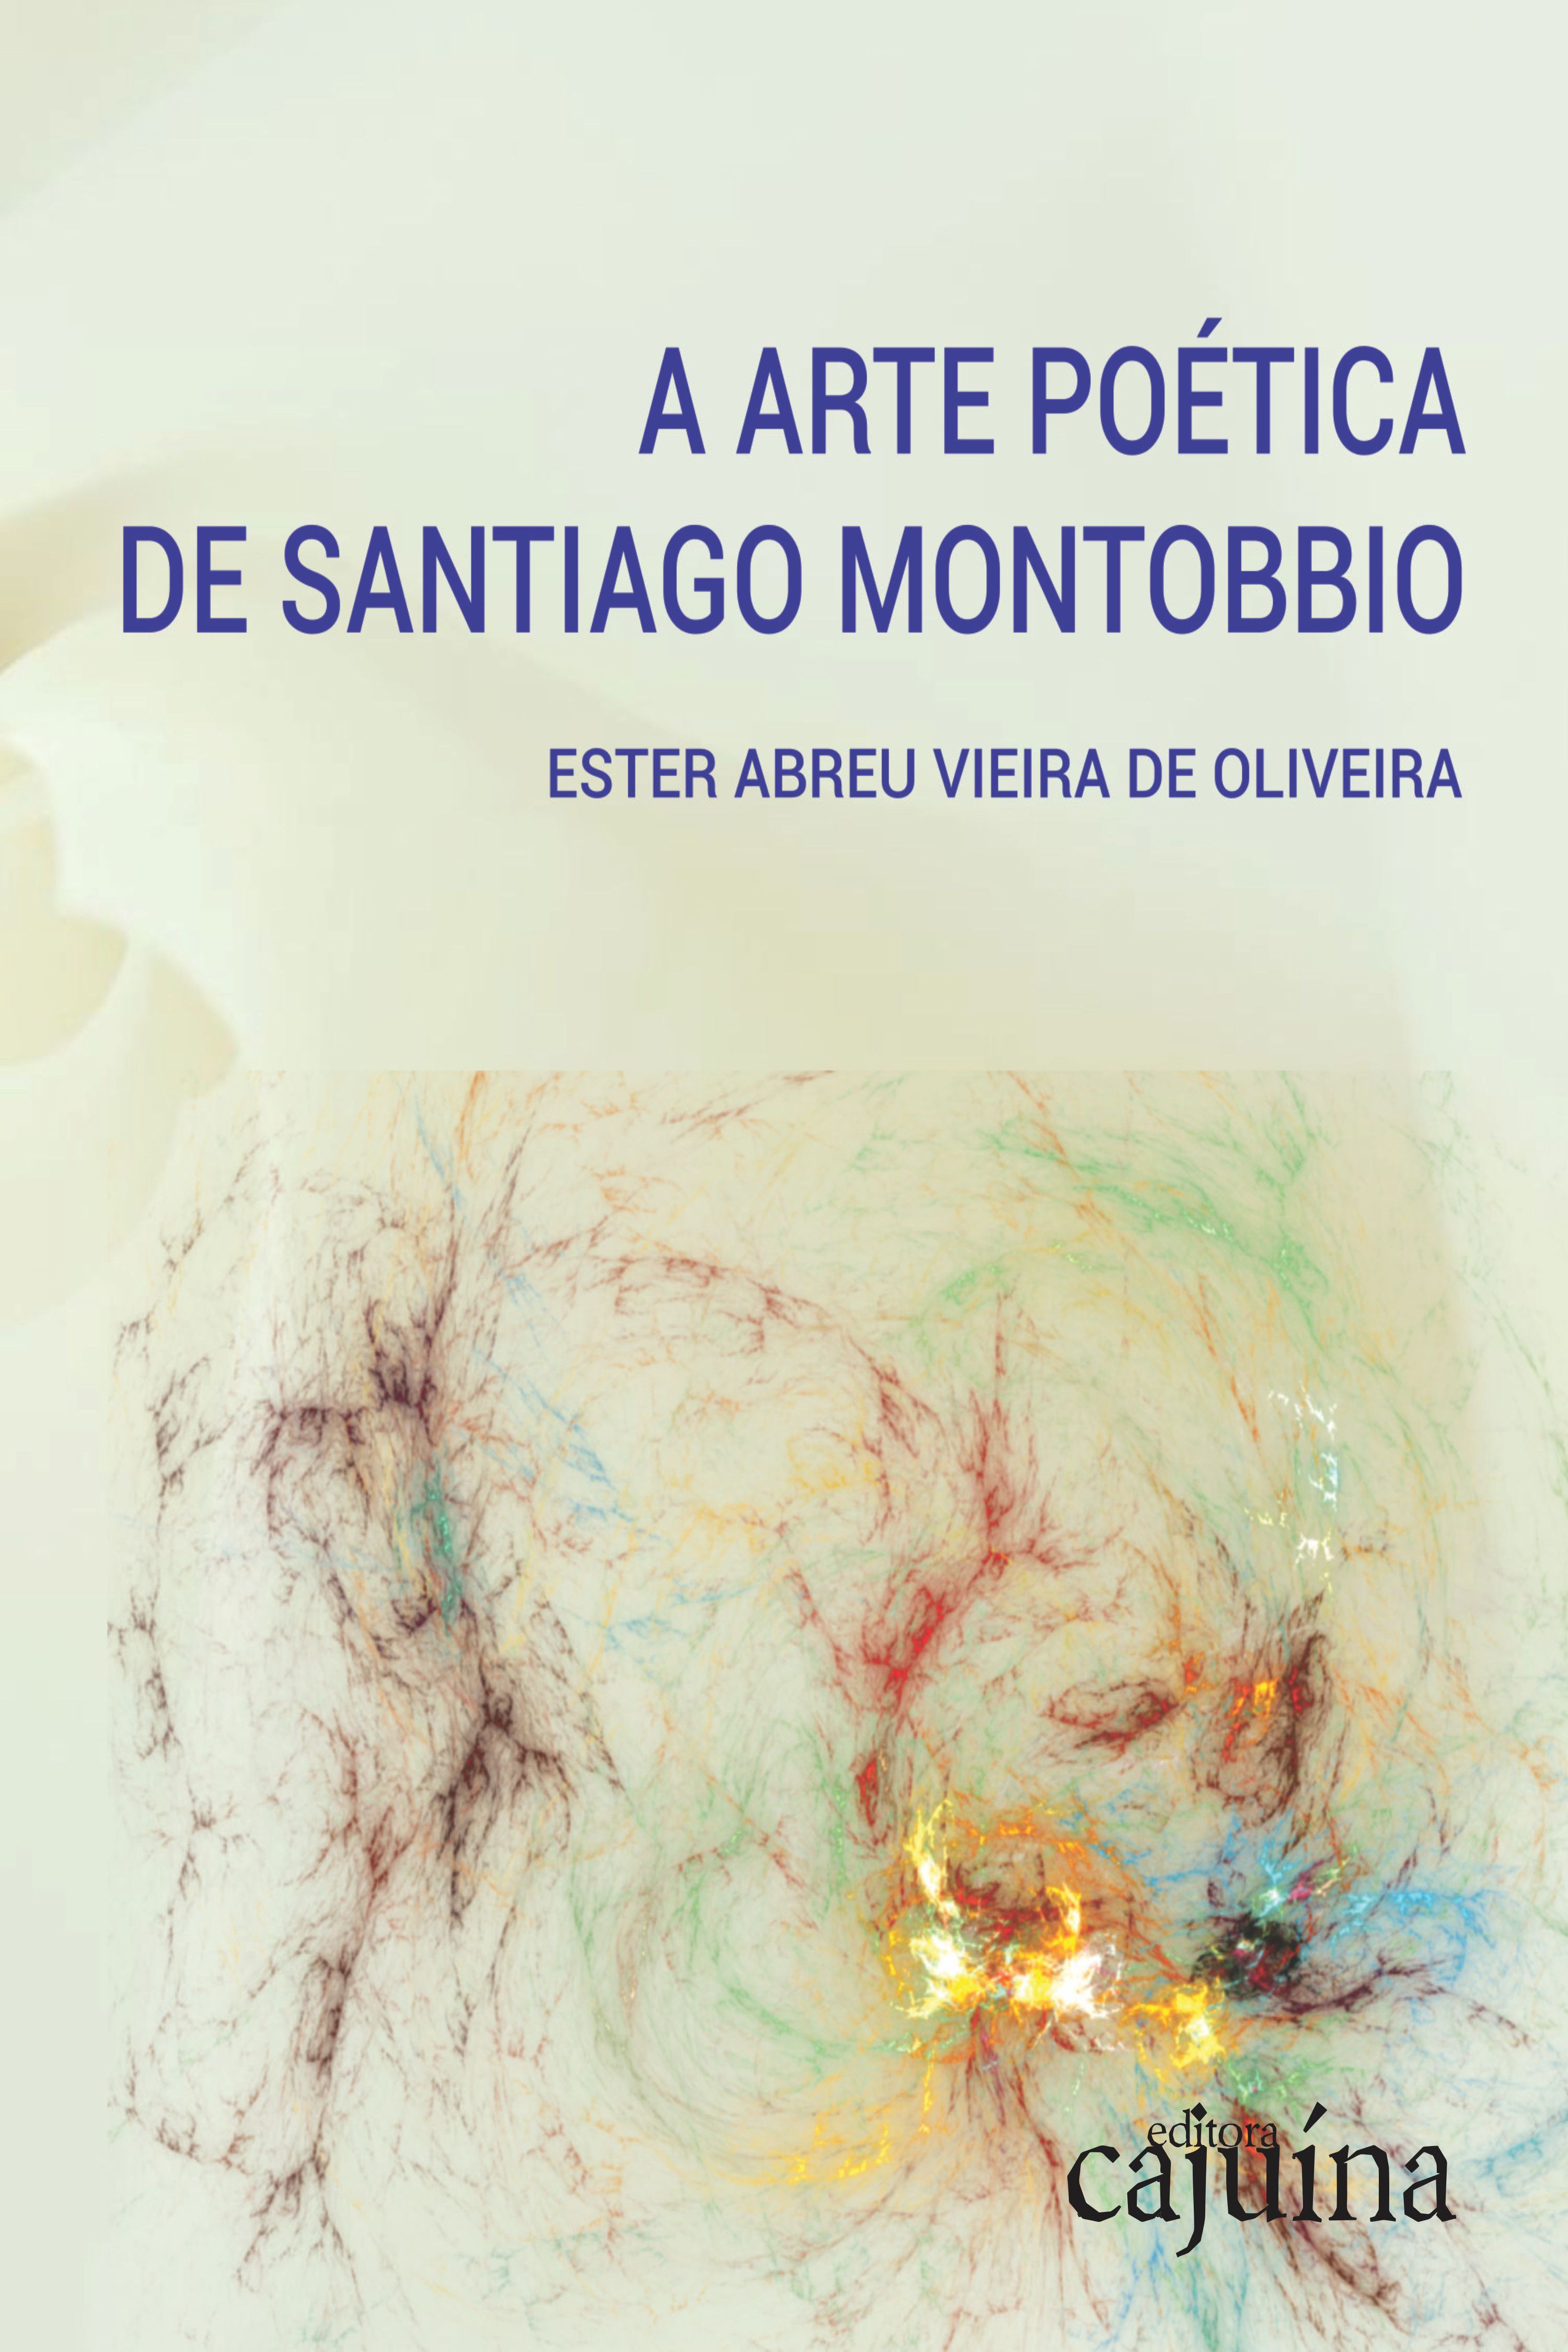 A arte poética de Santiago Montobbio